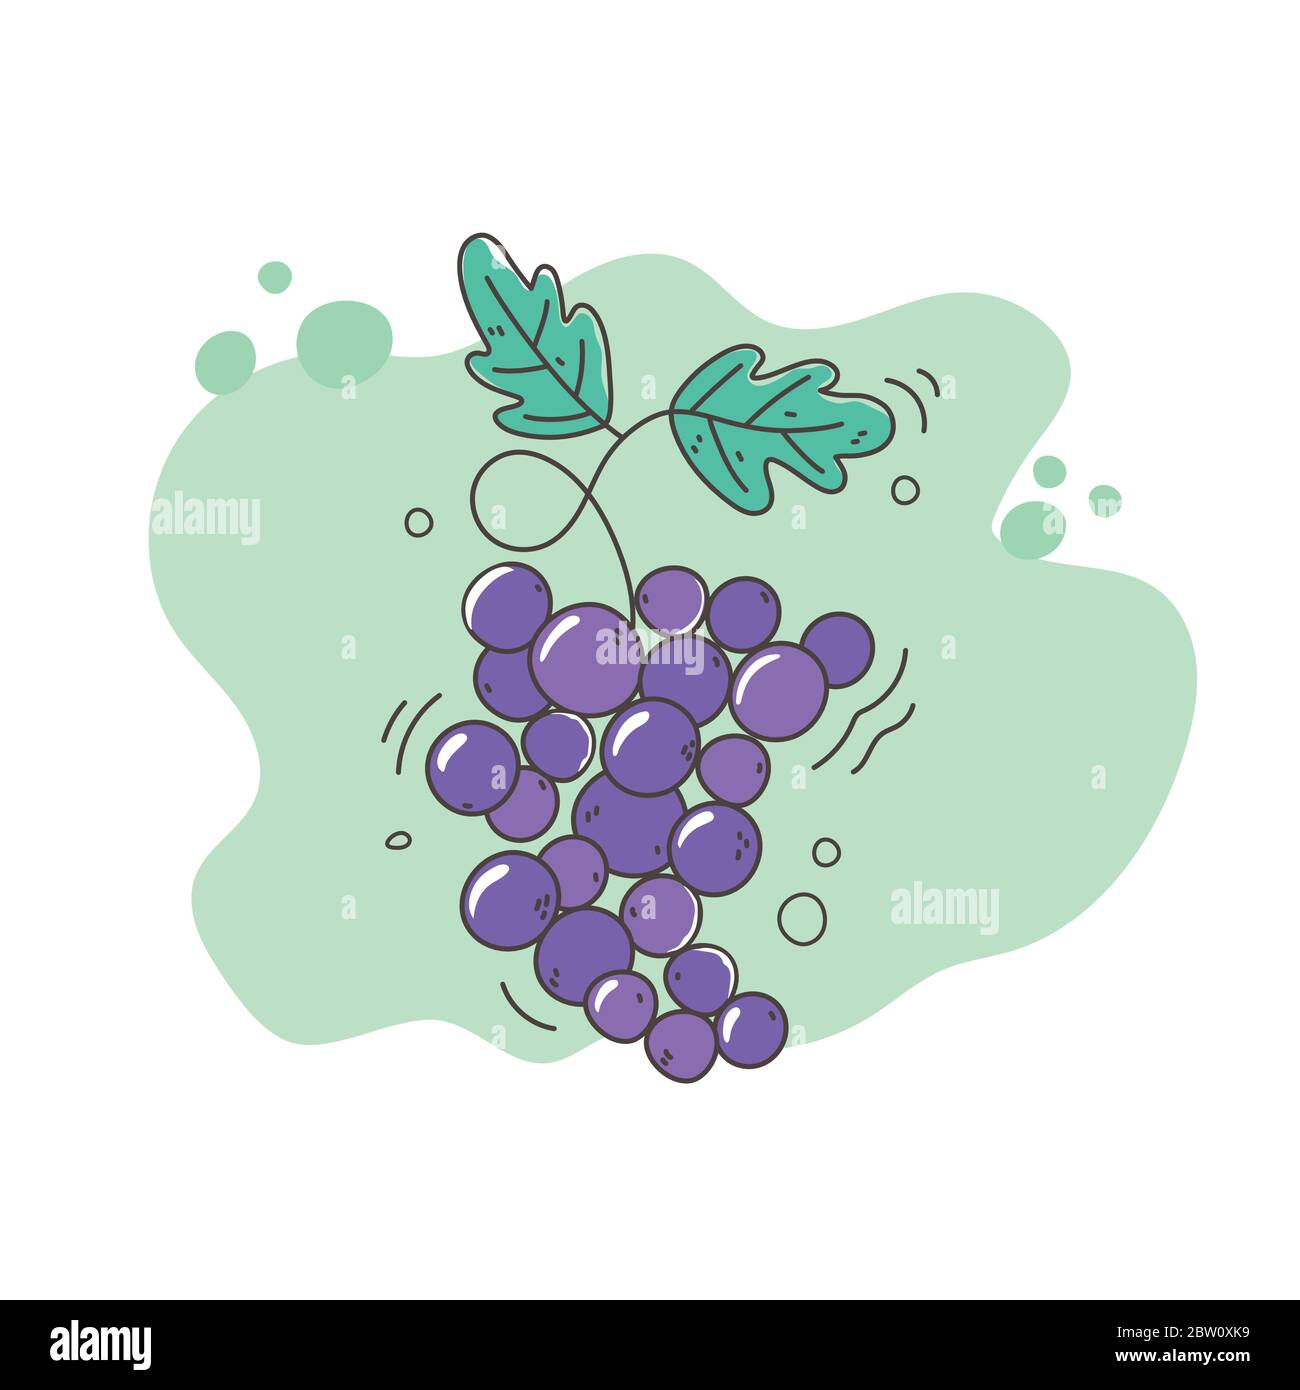 Gesunde Ernährung Ernährung Ernährung frisches Obst Trauben Symbol Vektor-Illustration Stock Vektor